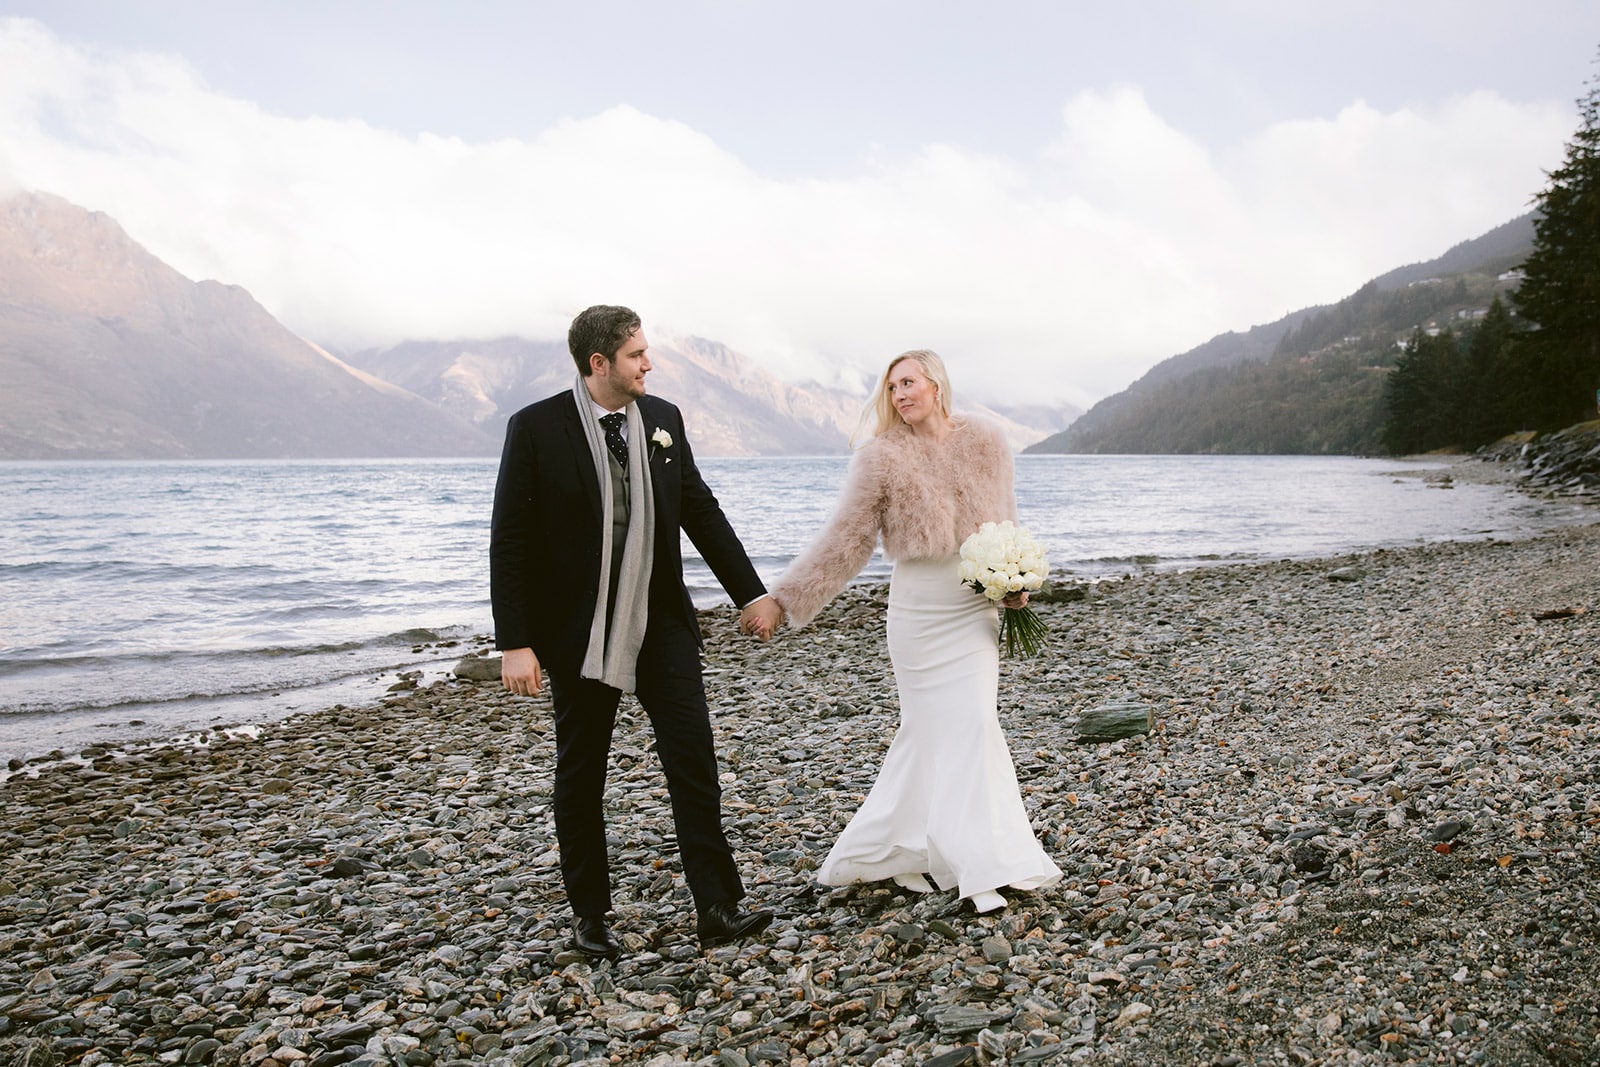 Heli Wedding in Wanaka on Coromandel Peak New Zealand